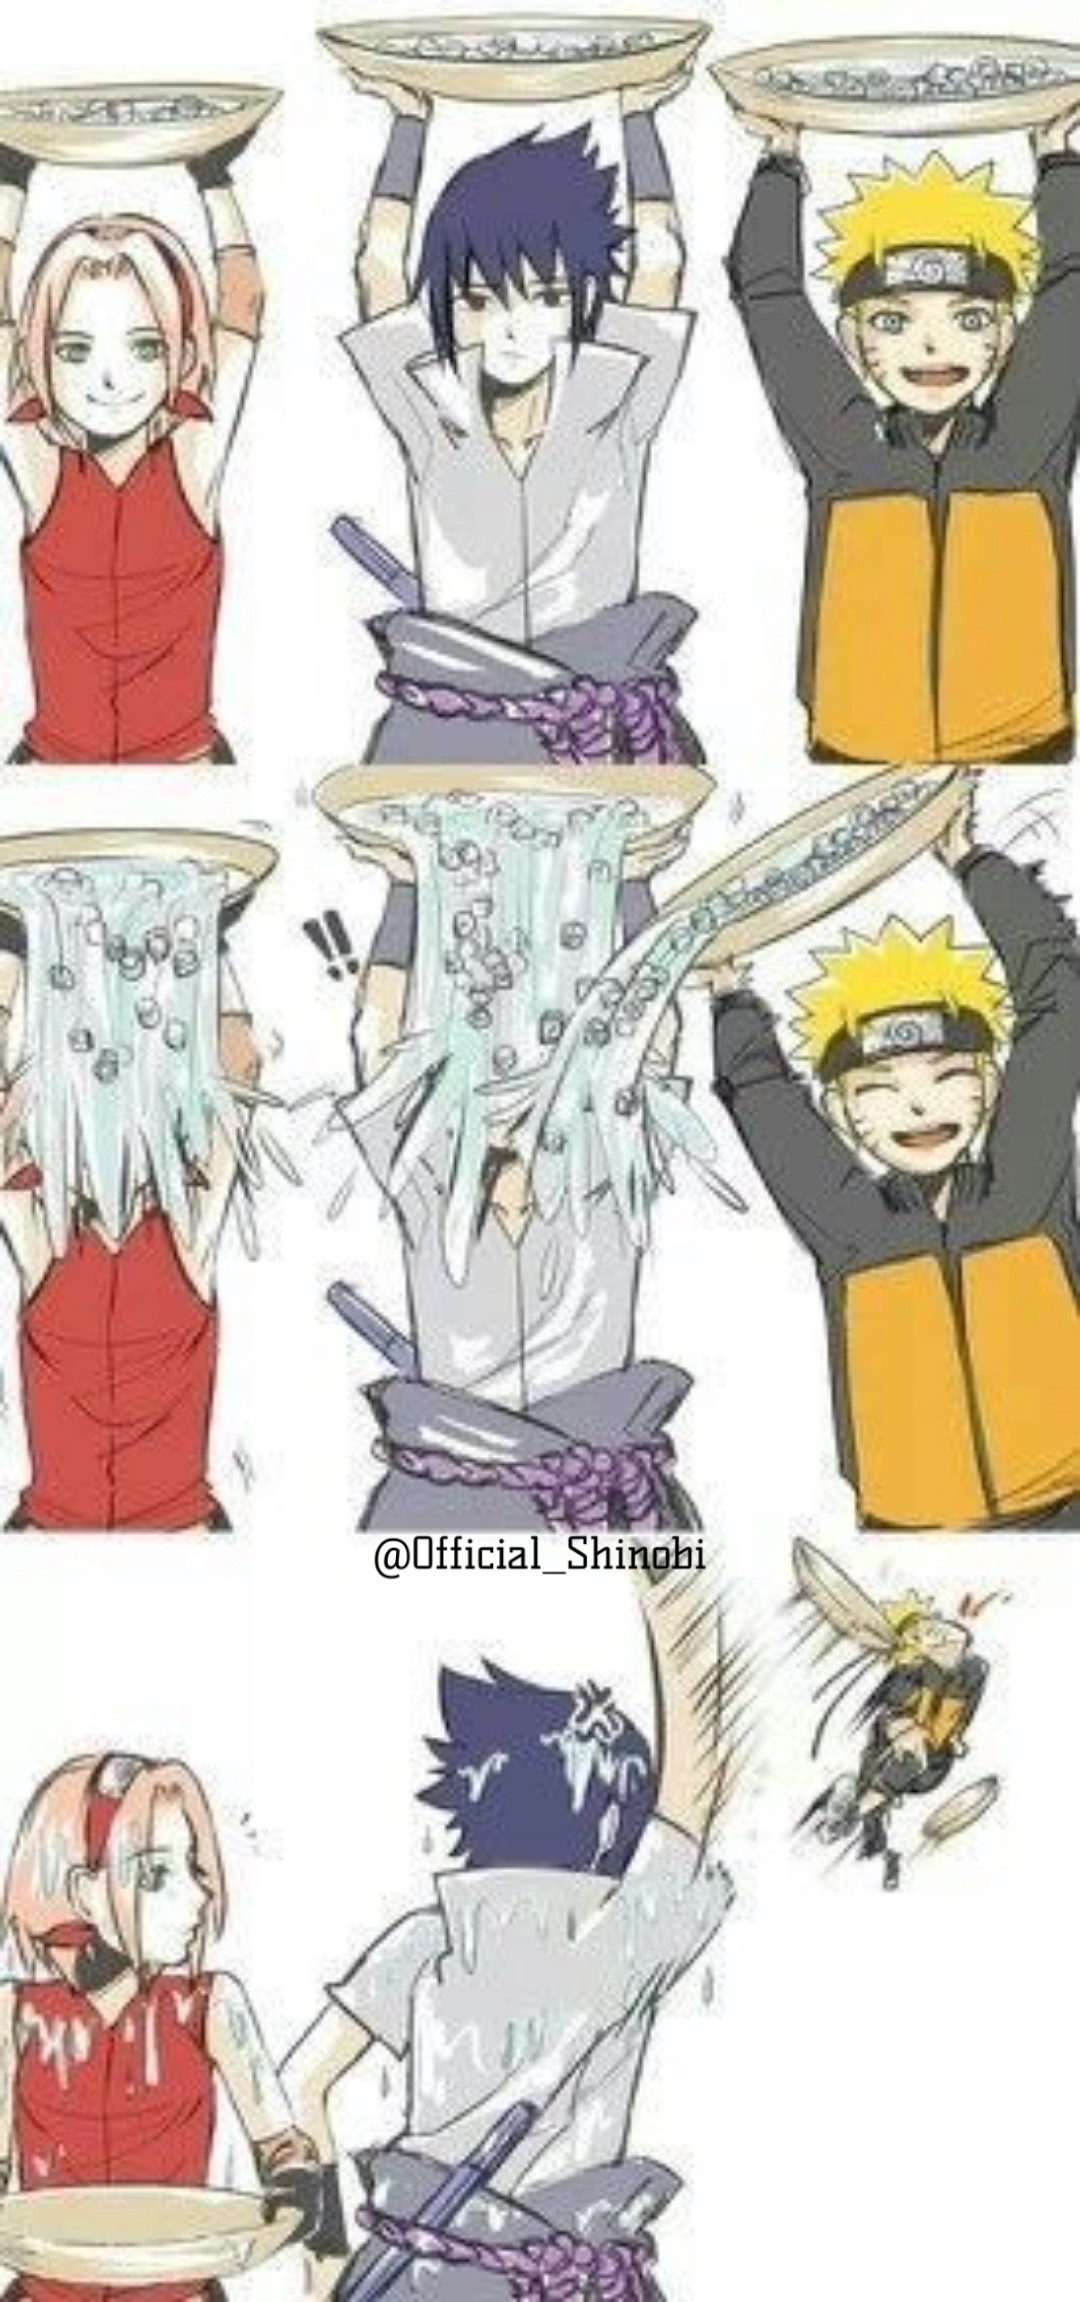 Sakura Sasuke Naruto Meme Image By ᴋᴀɢᴀᴍɪ ʀᴇɪ